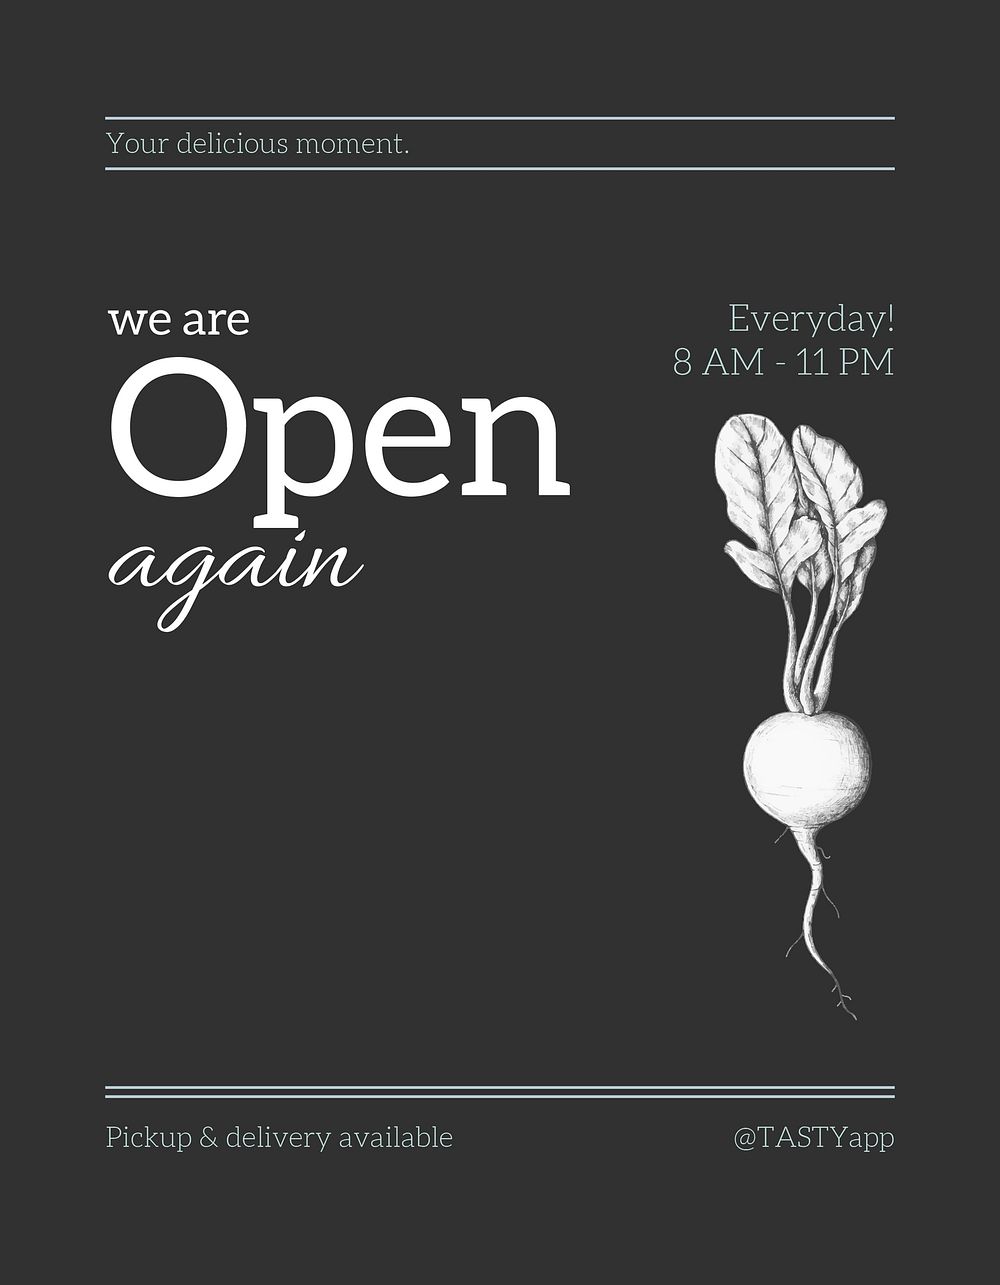 Restaurant flyer template, small business advertisement psd 